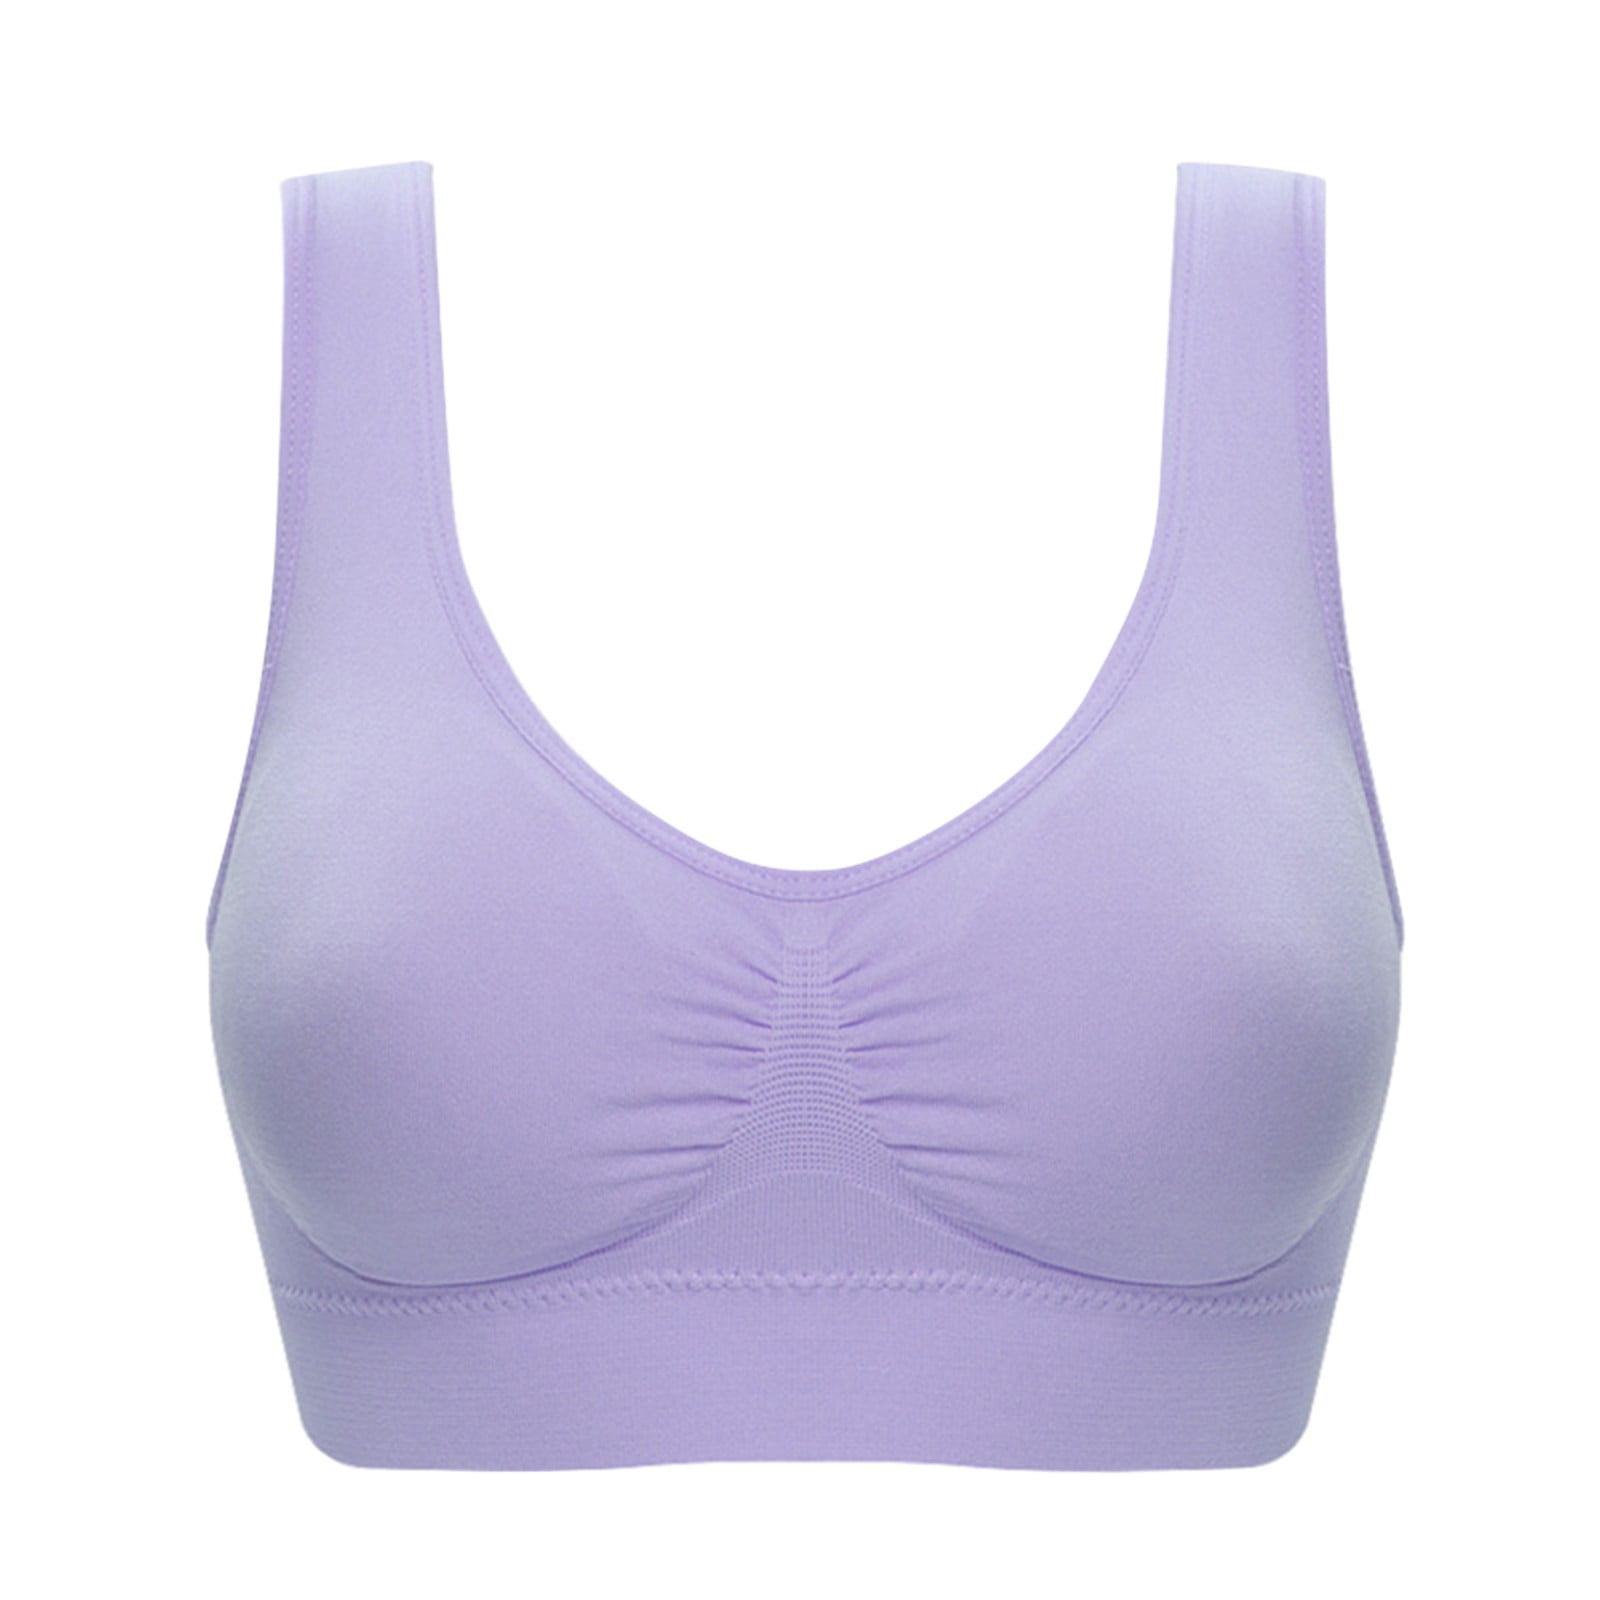 Eashery Bras for Women Adjustable Comfy Sport Bra Purple M